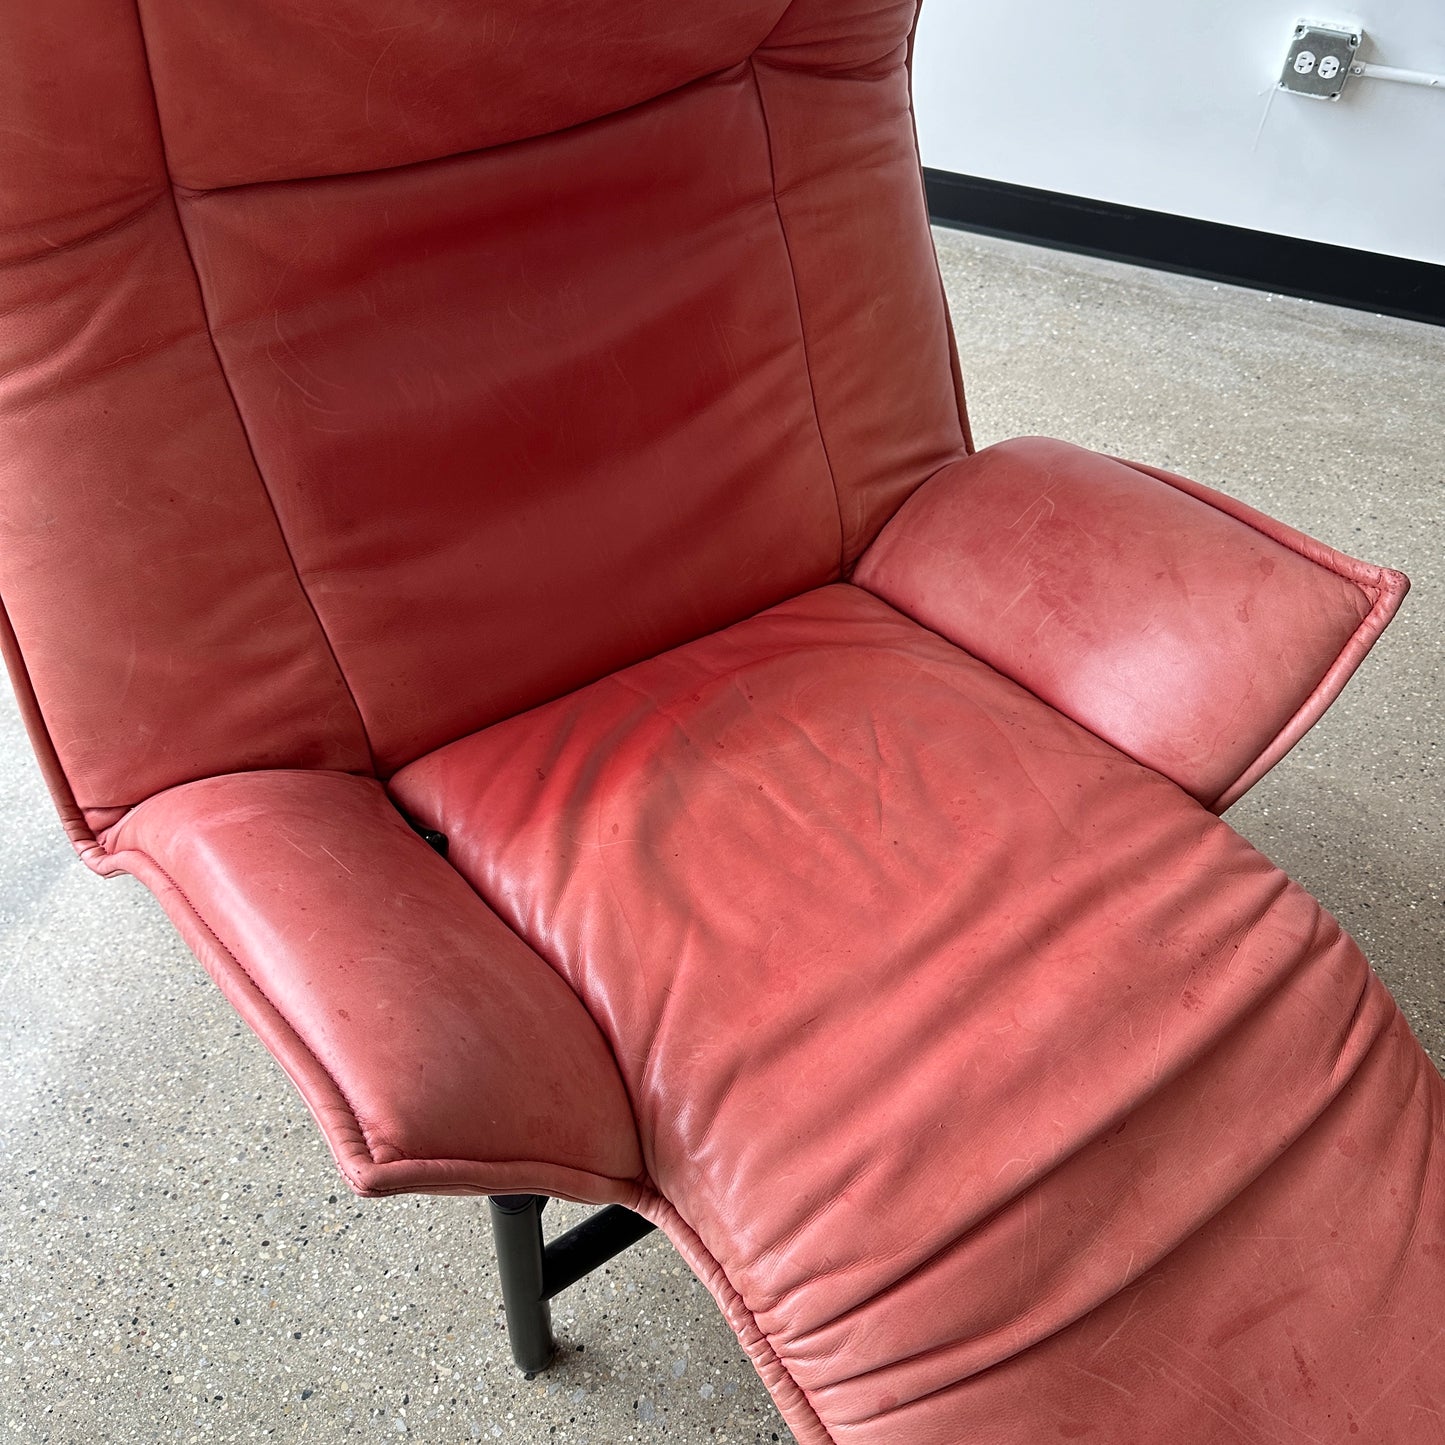 Vico Magistretti “Veranda” Chairs, a pair